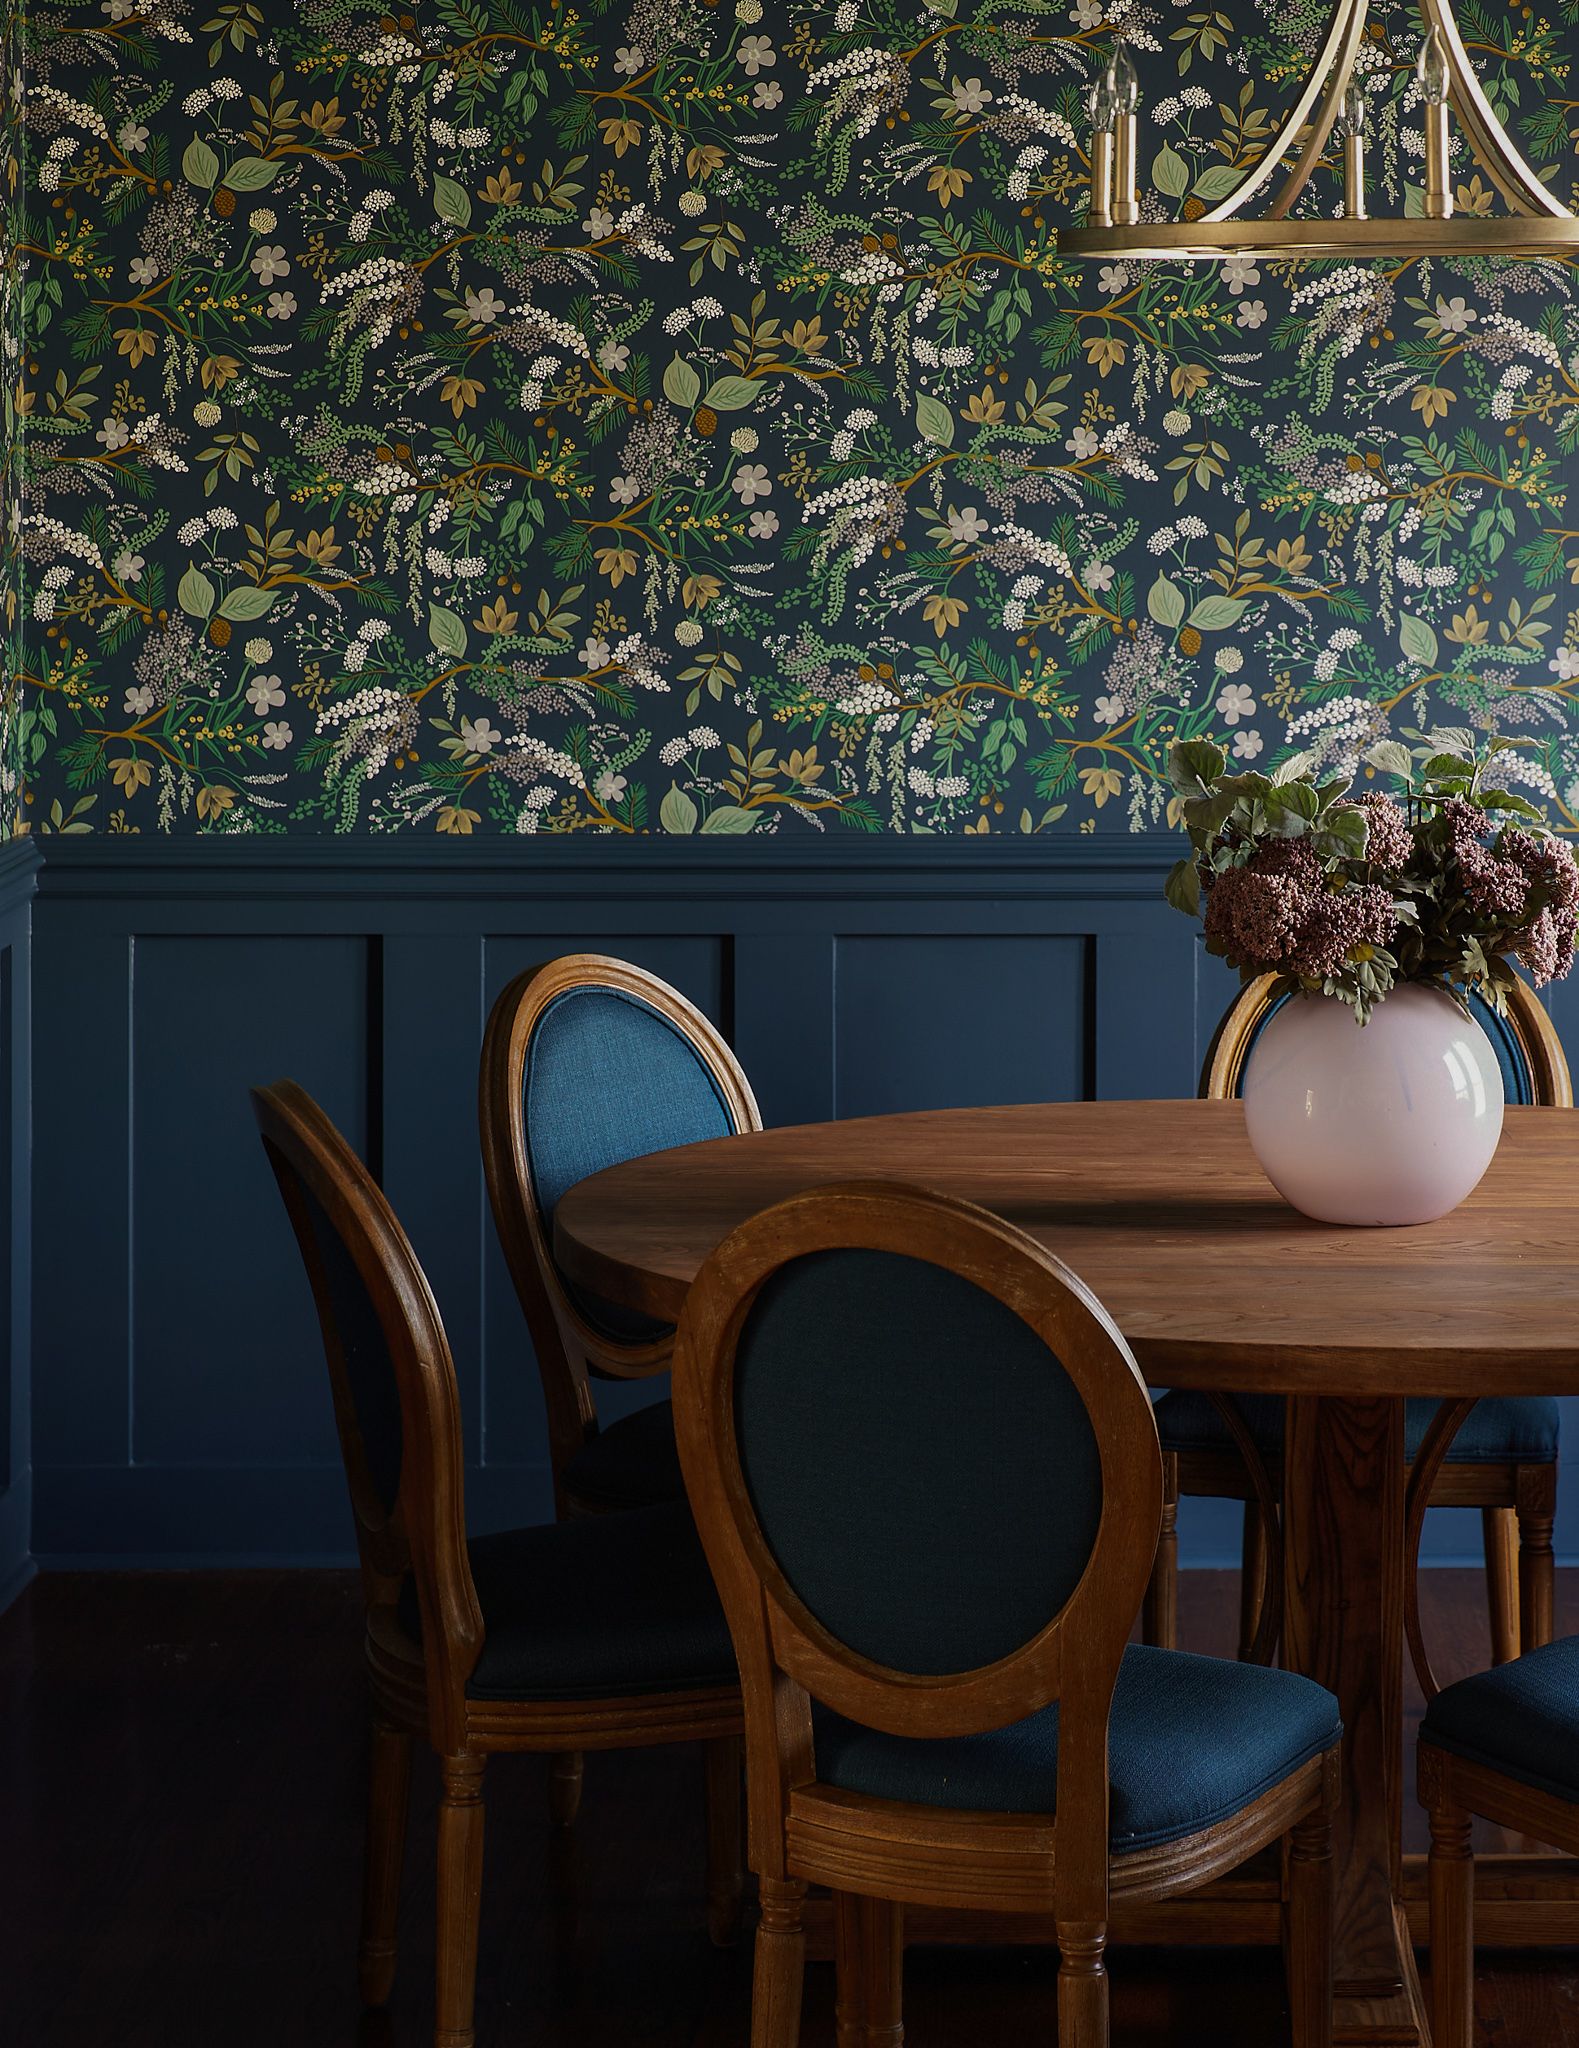 wallpaper in dining room ideas